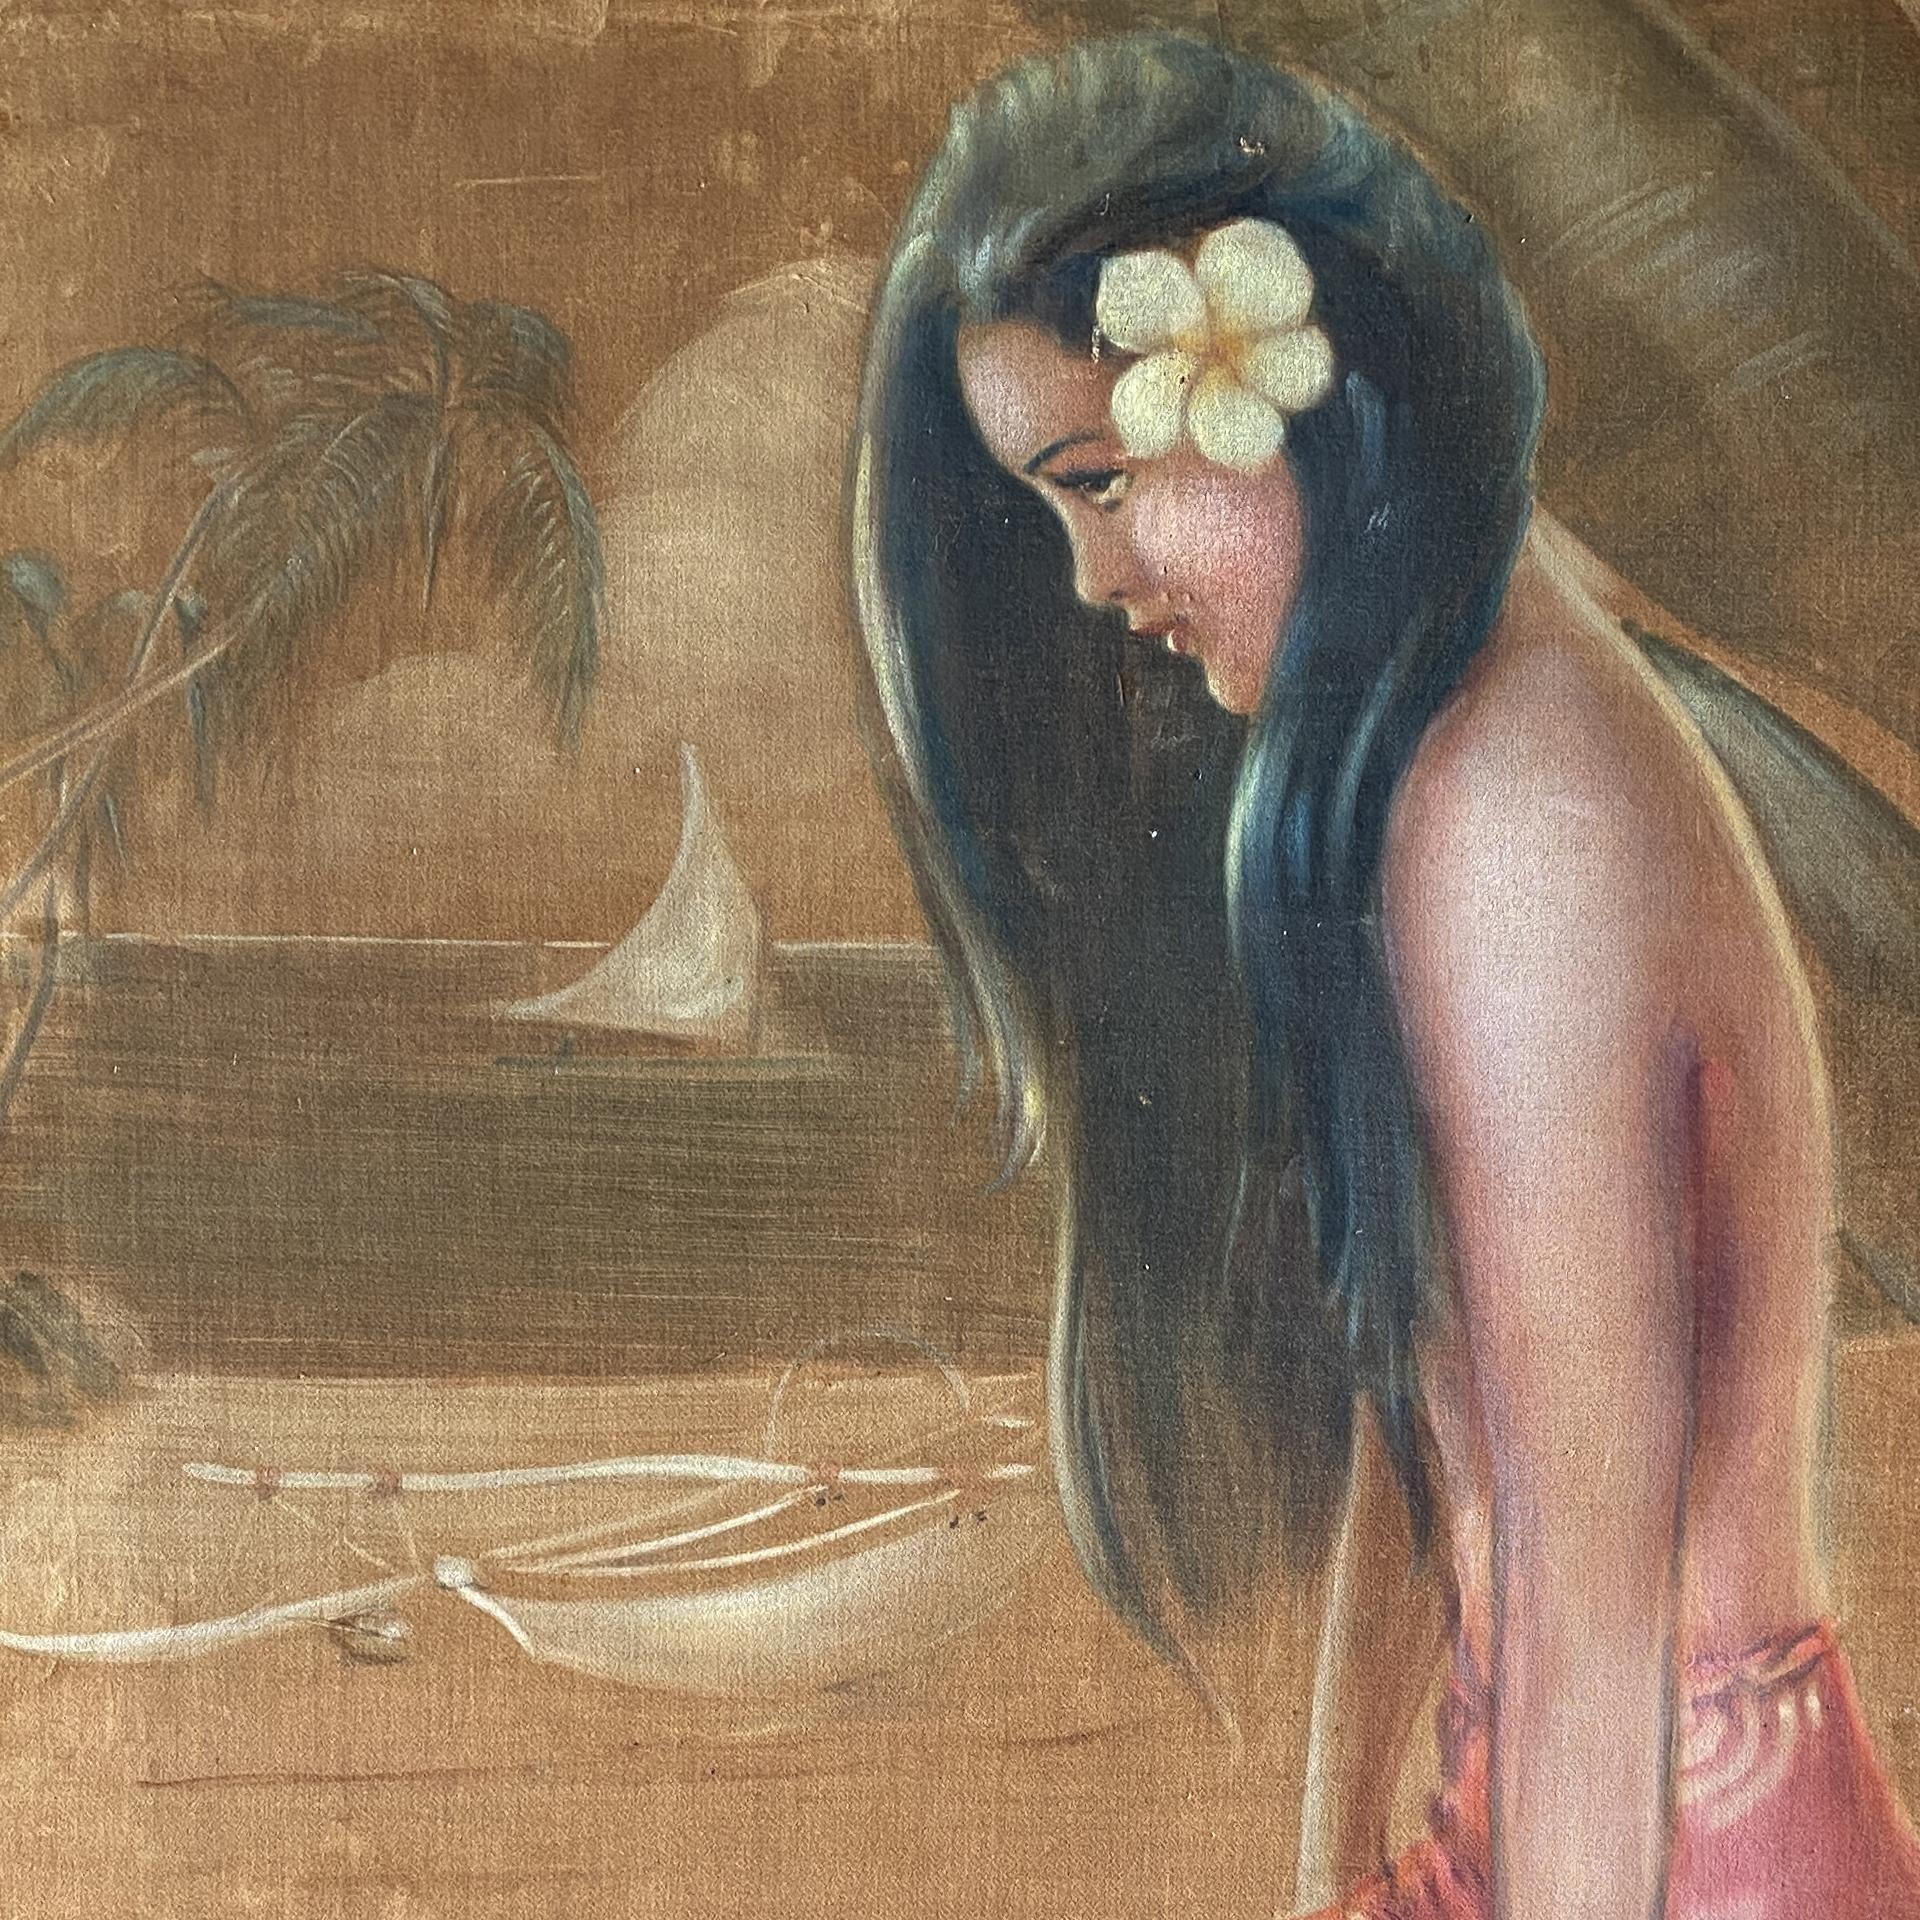 Originale peinture à l'huile sur velours d'une jeune fille polynésienne sur la plage, datant de la fin des années 1930/1940, signée 